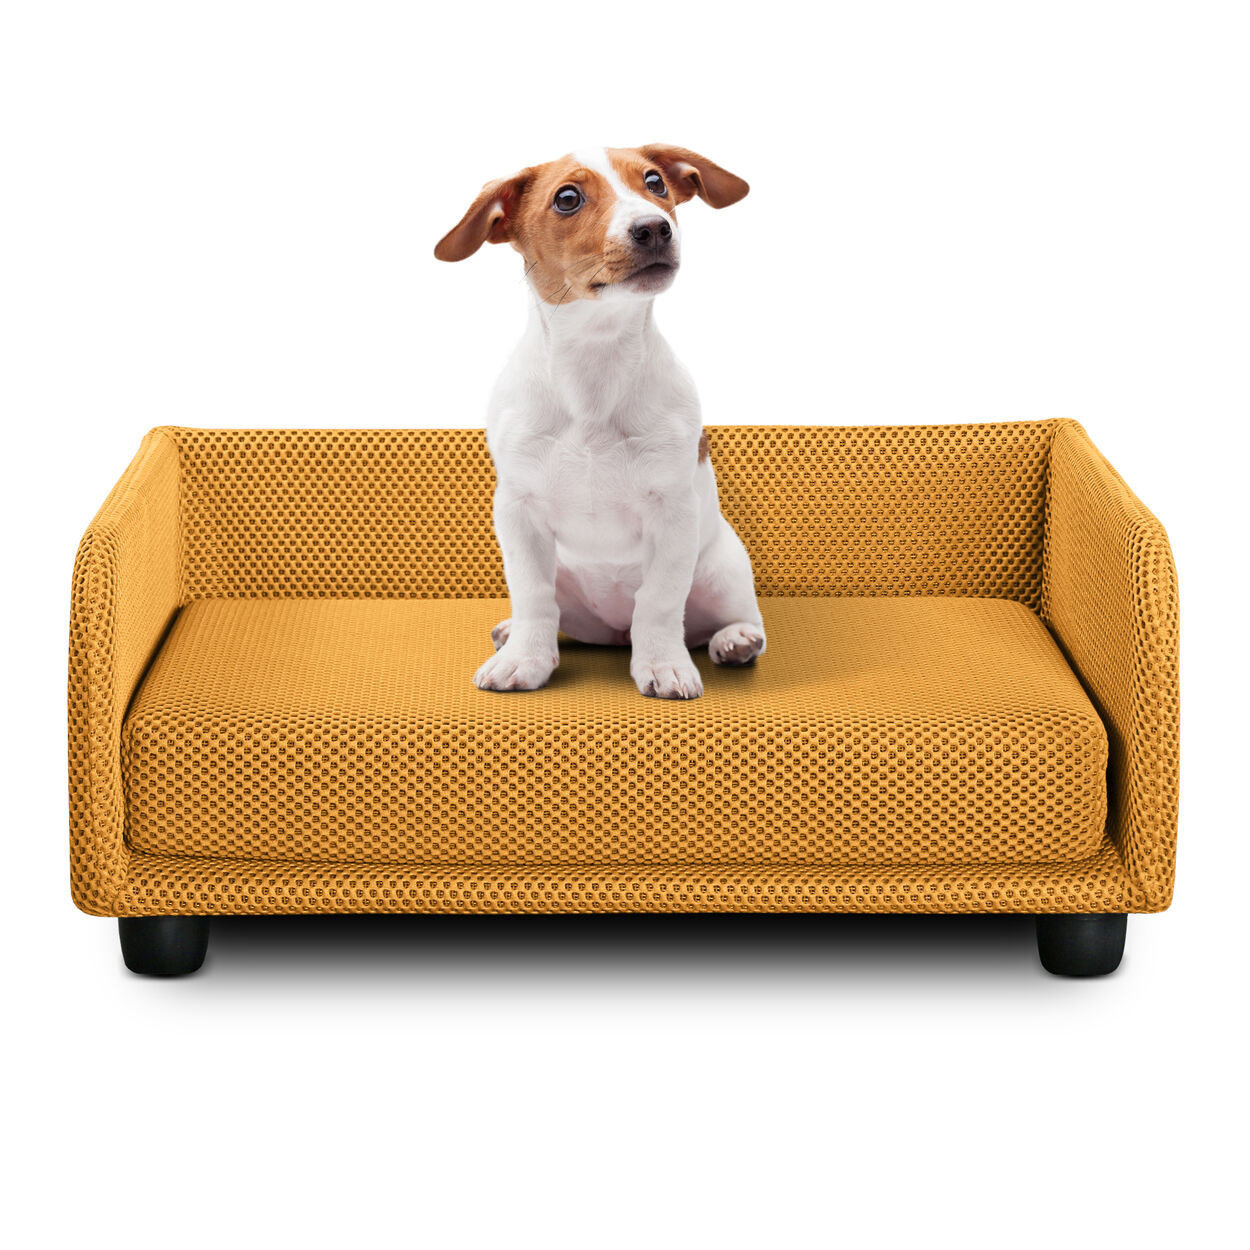 evergreenweb cuccia per cani divano letto king dog home 50x70 giallo